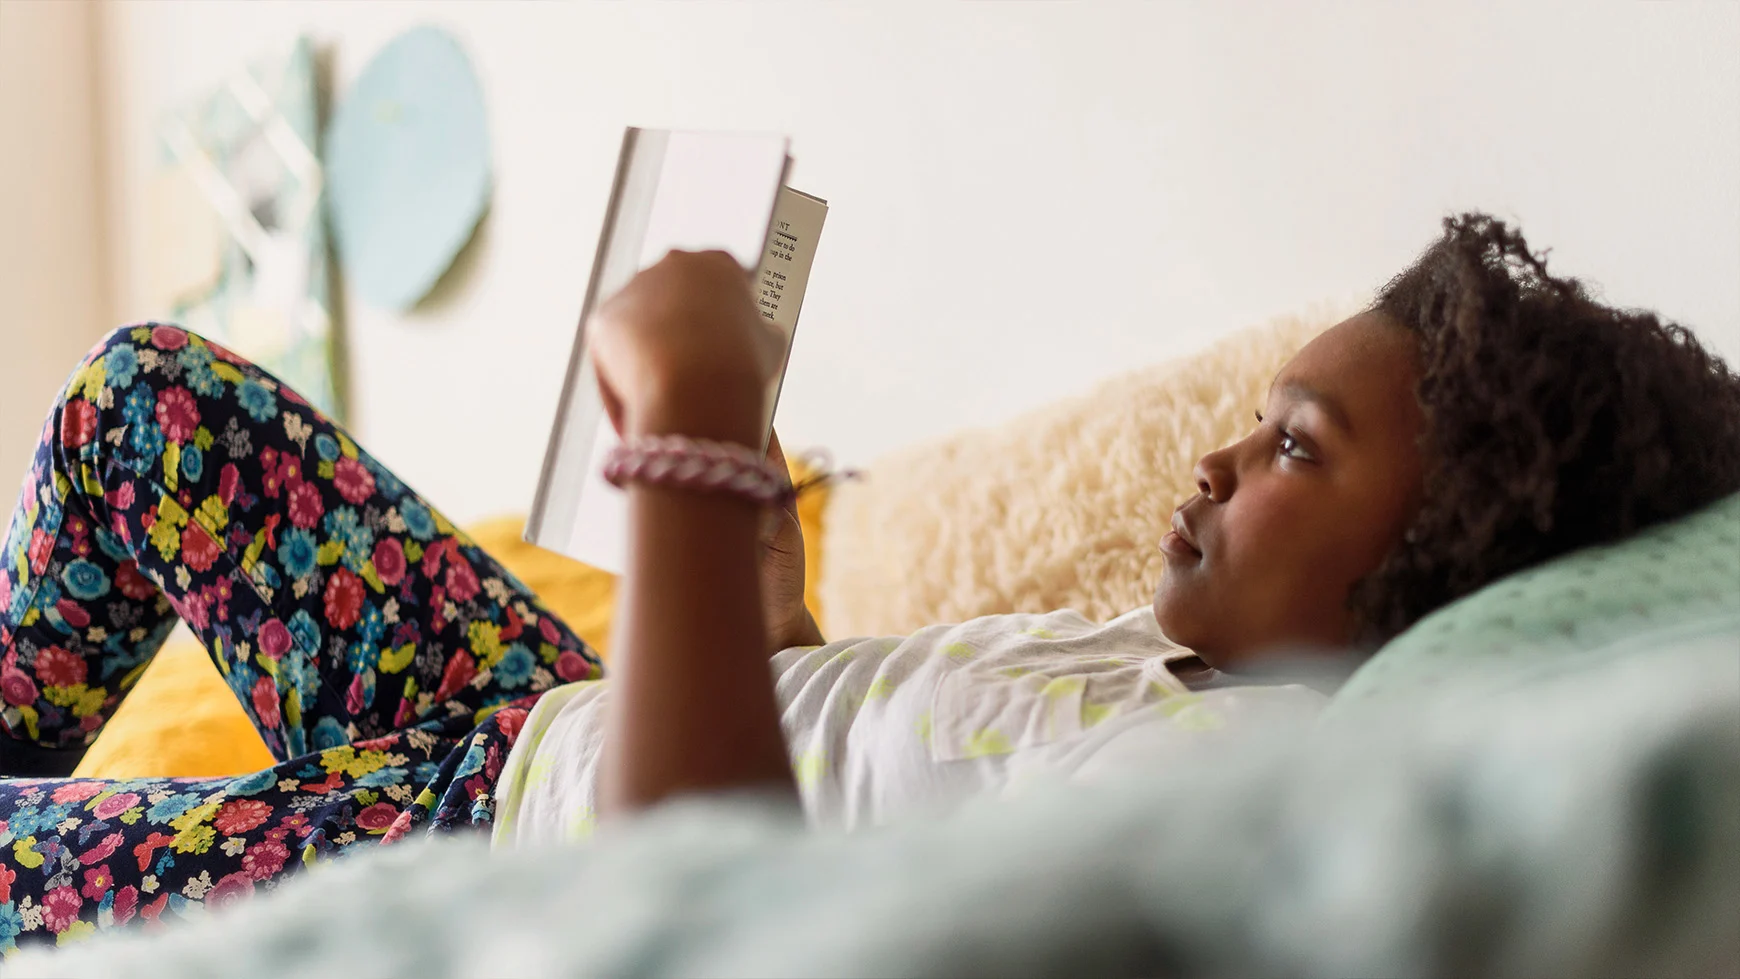 Una niña está recostada leyendo un libro. Viste pantalones floreados y una camiseta blanca.